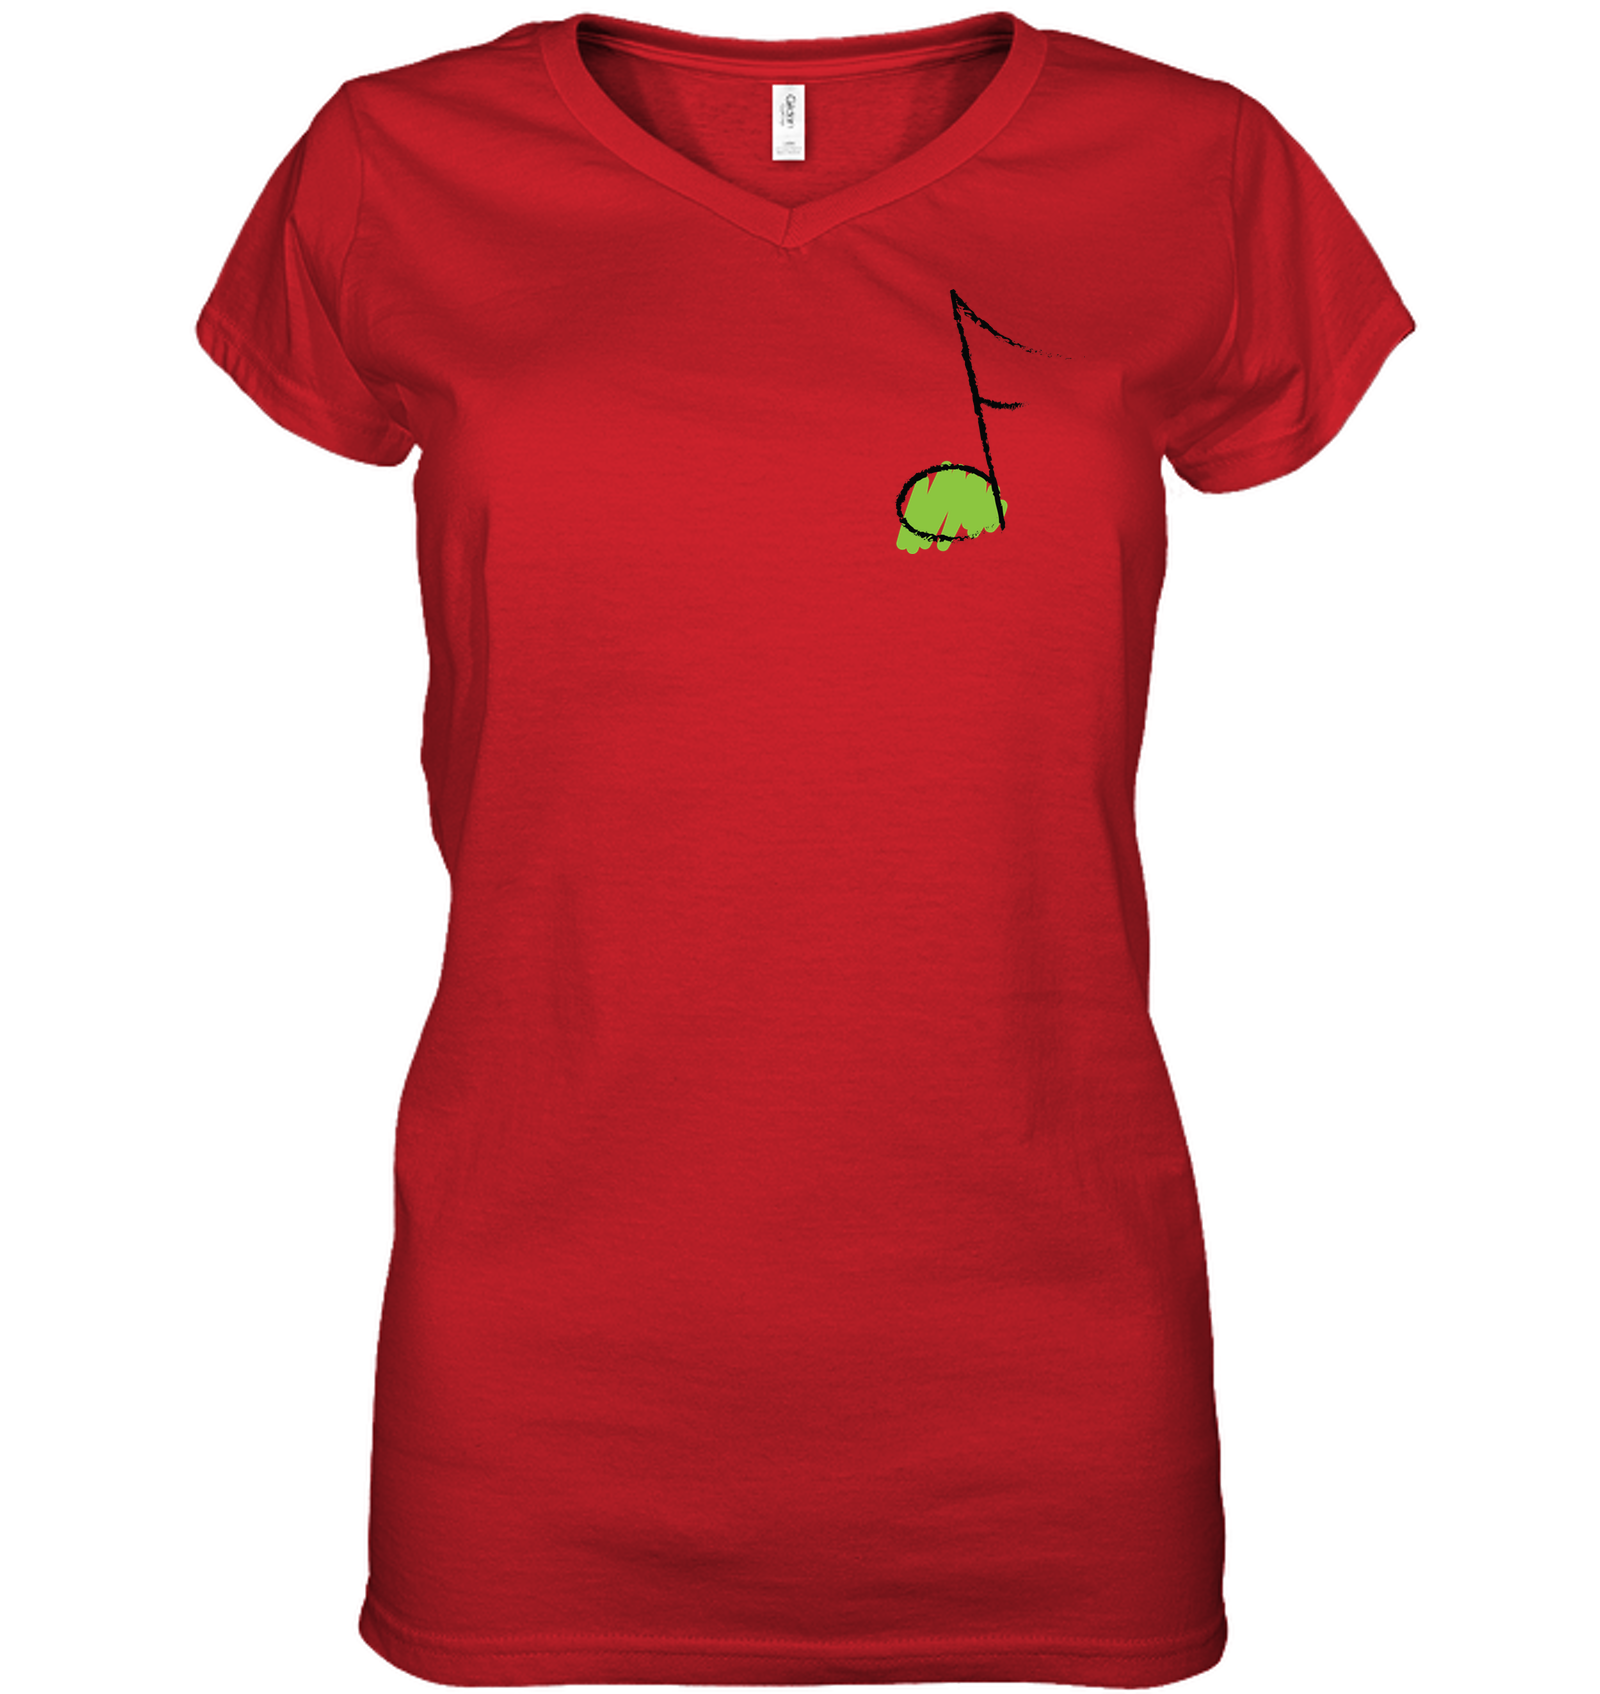 Green Note (Pocket Size) - Hanes Women's Nano-T® V-Neck T-Shirt